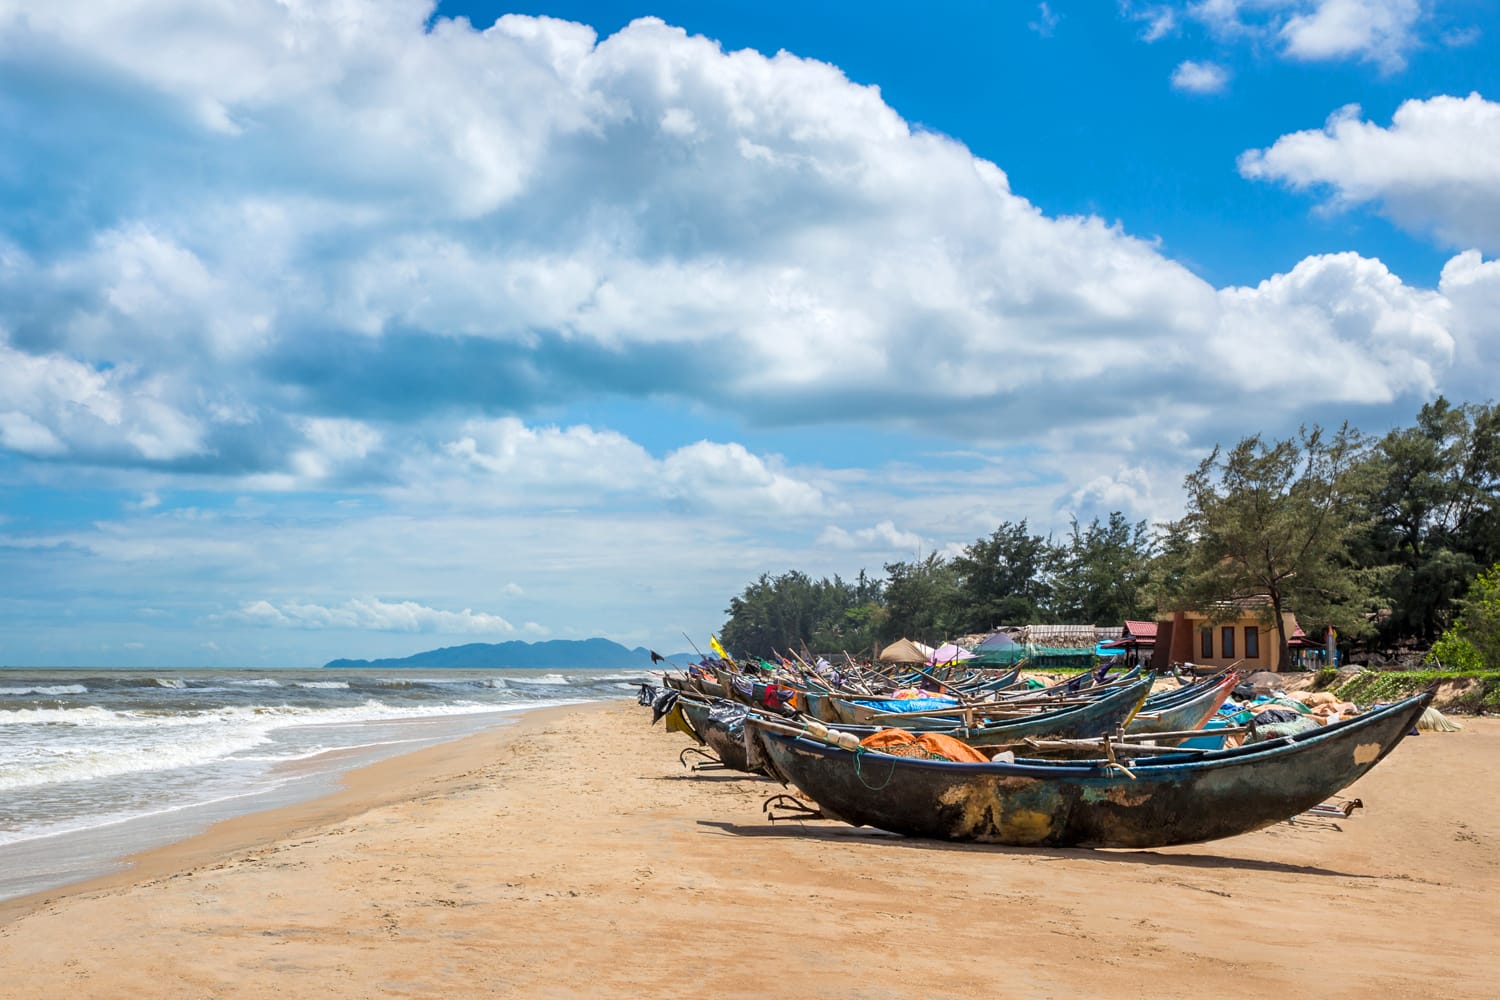 Bella escena i lloc famós a la platja de Ho Coc, província de Ba Ria Vung Tau, Vietnam